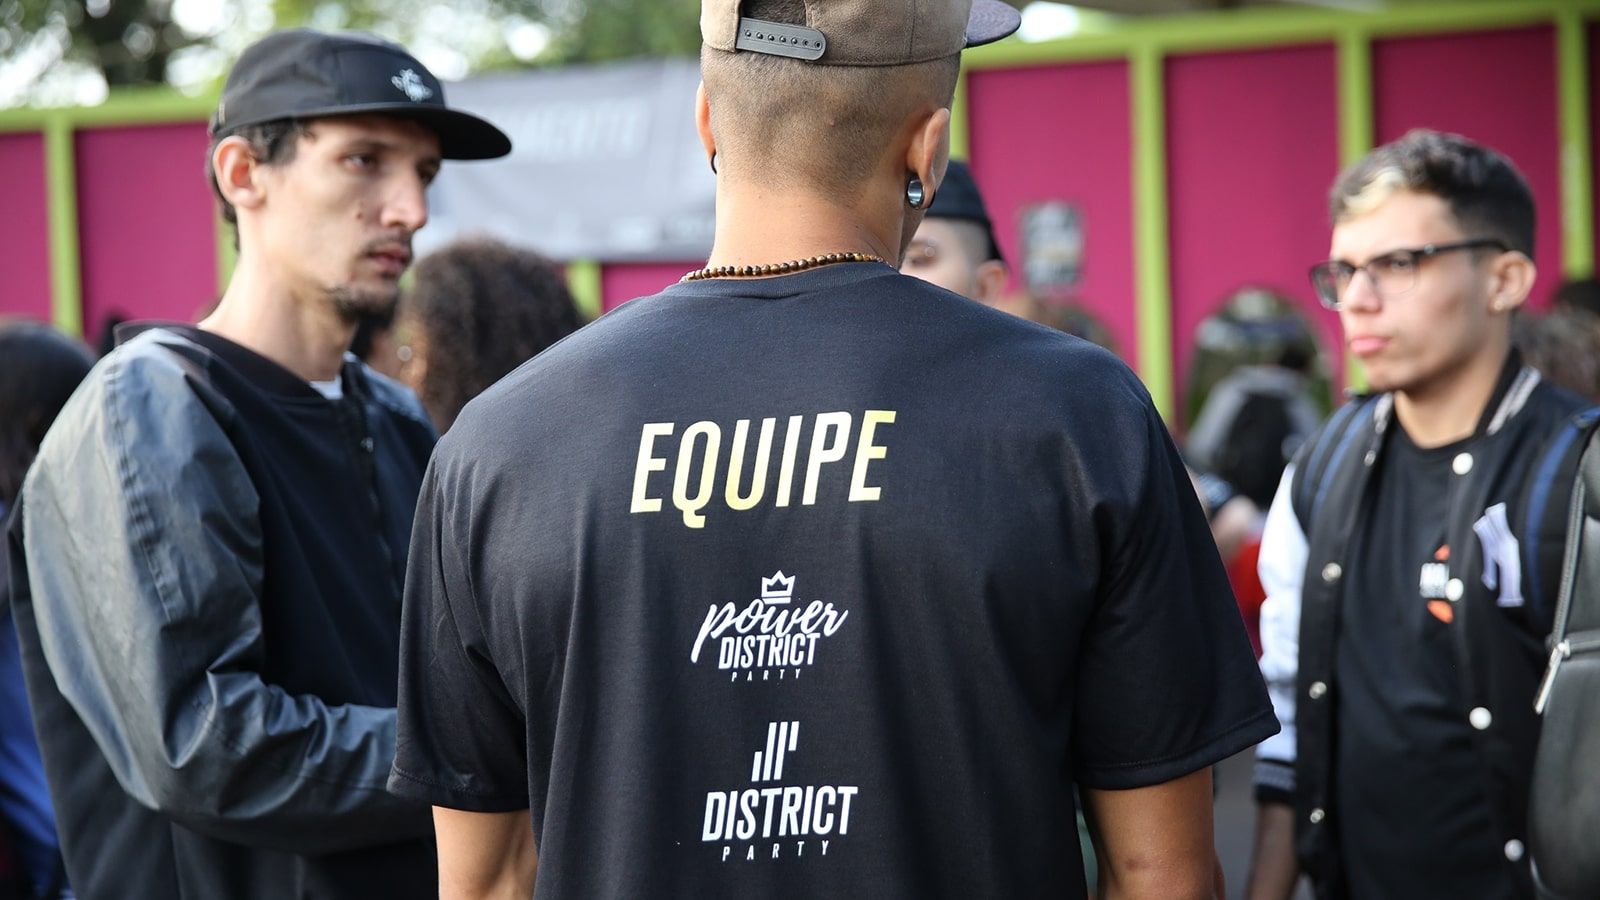 Um membro da equipe do Hip Hop District, vestindo uma camiseta preta com a palavra Equipe, auxiliando dois dançarinos com dúvidas no estande de credenciamento localizado no Parque da Uva.